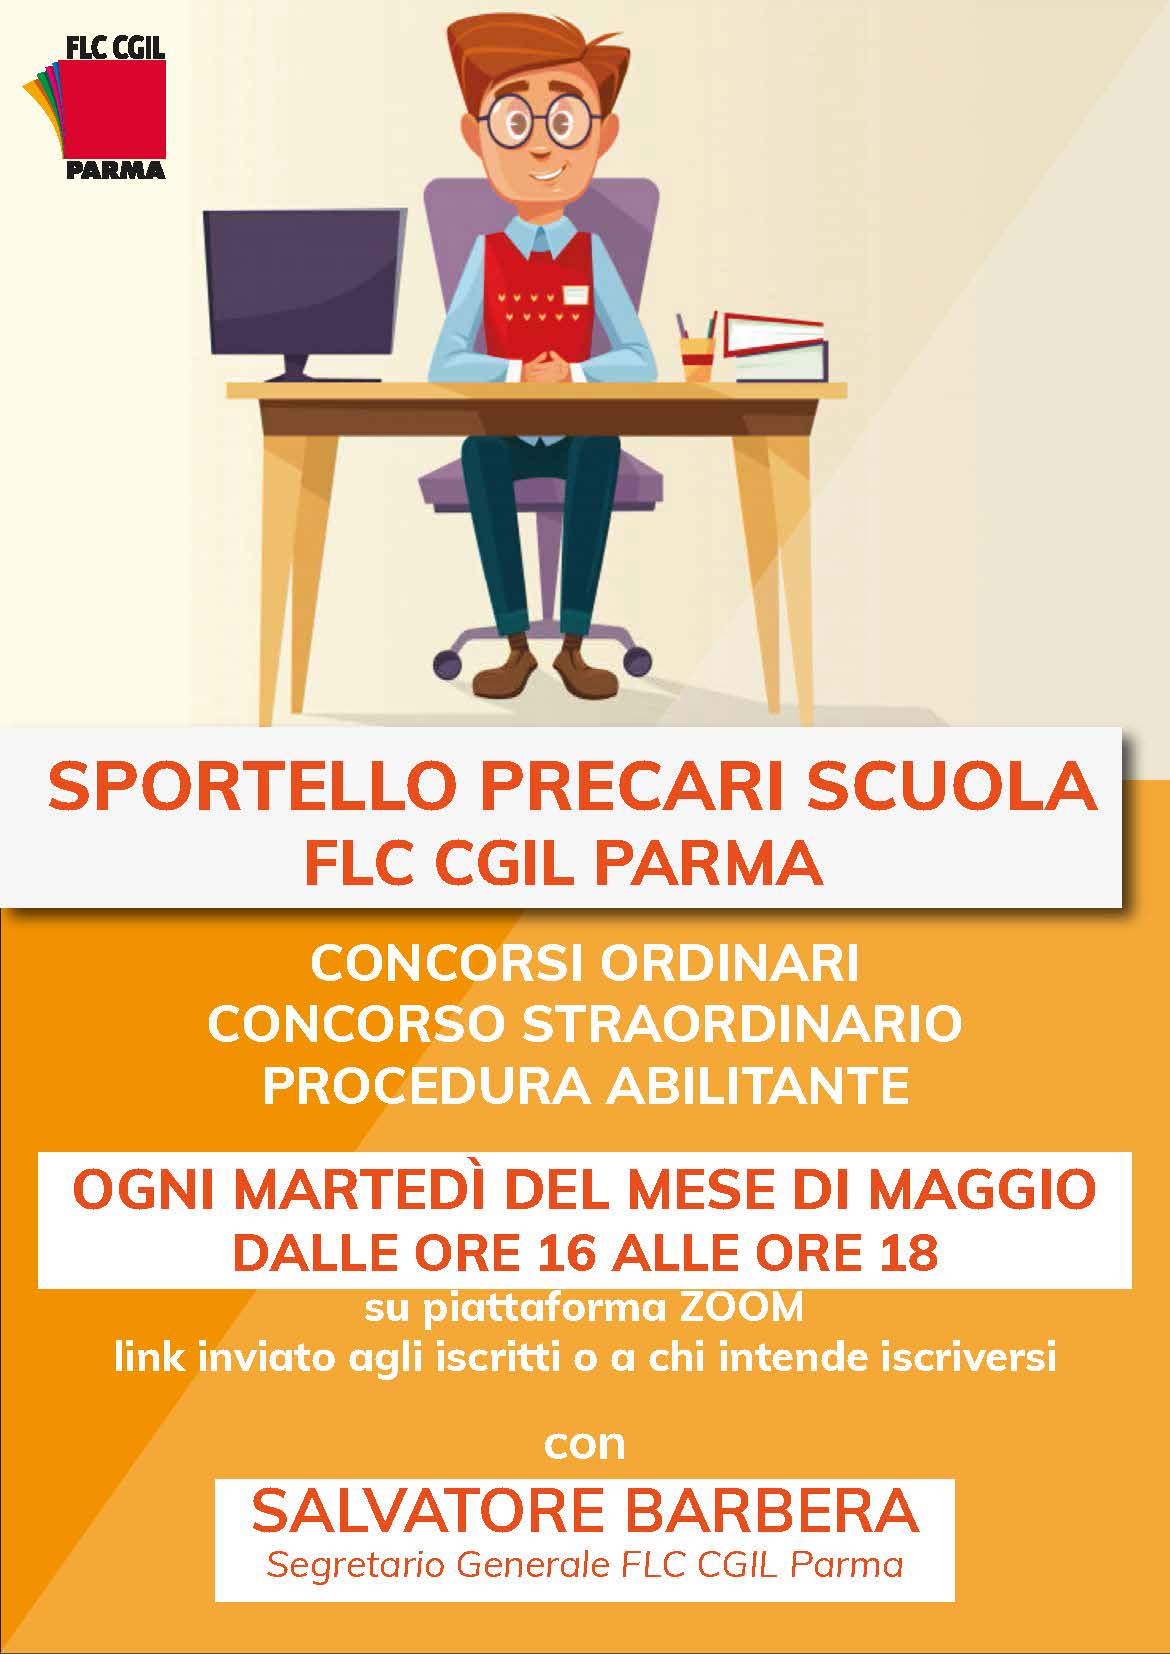 Sportello precari scuola attivo a Parma